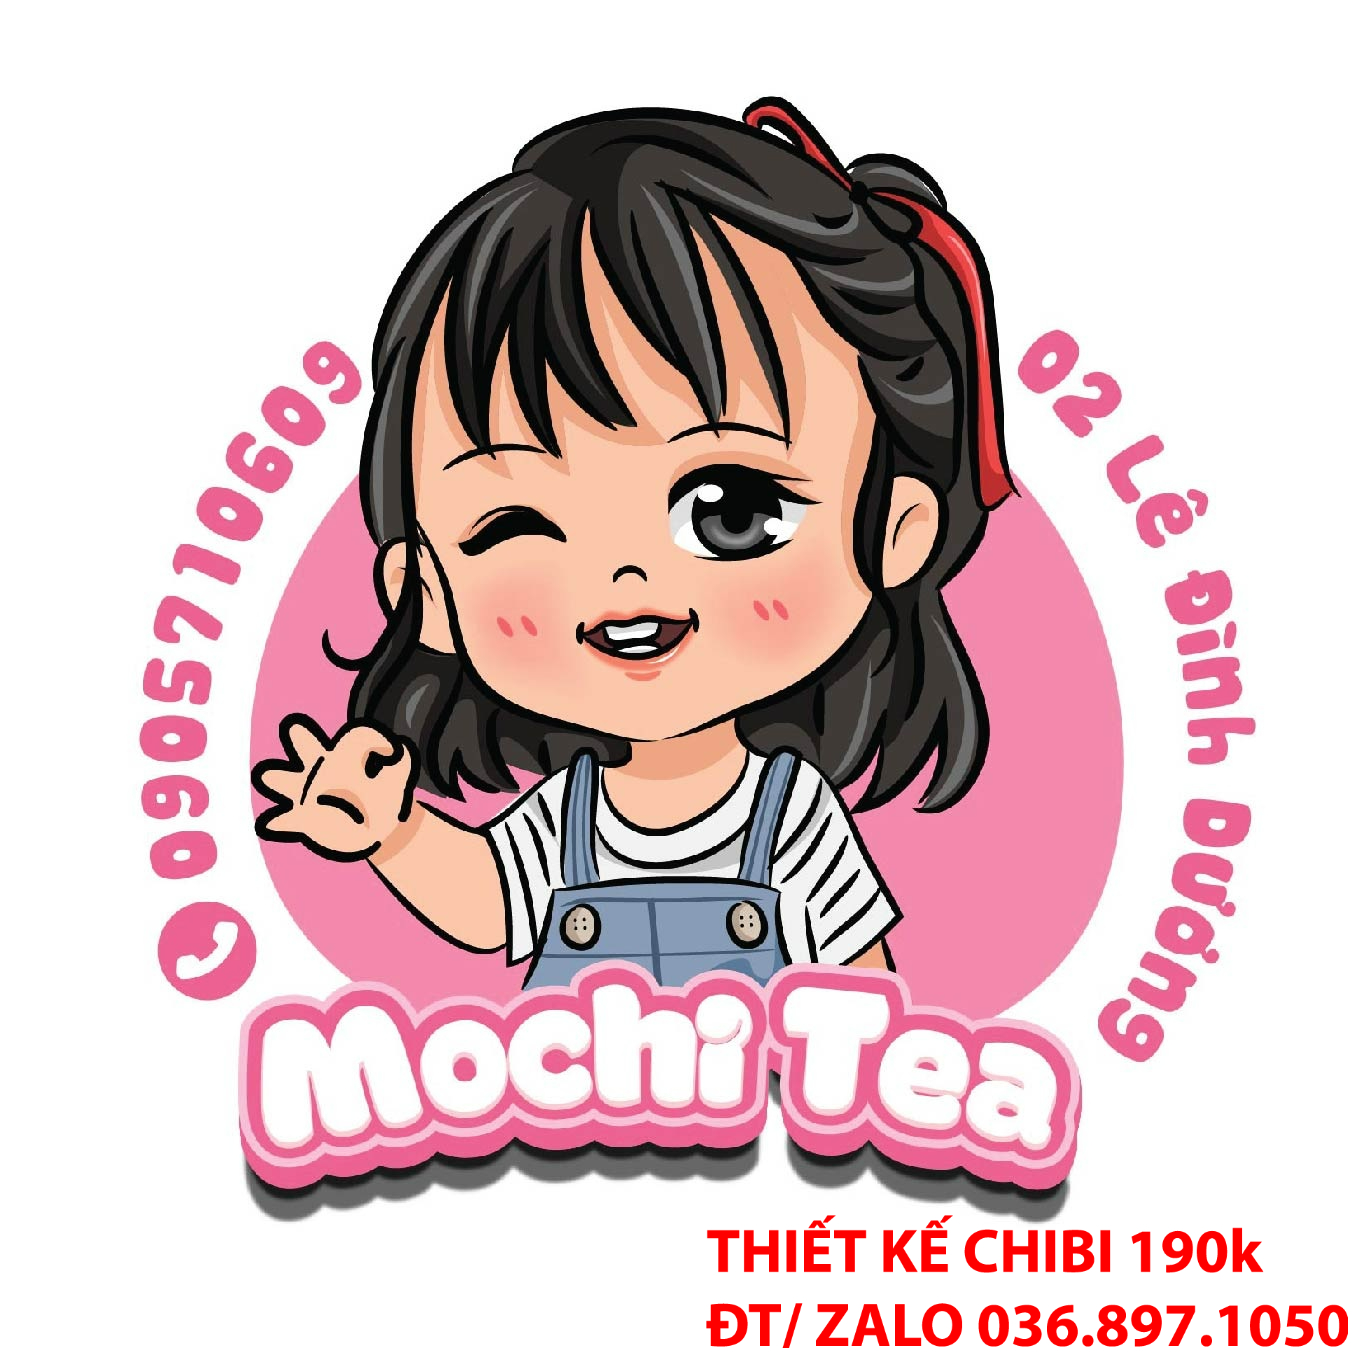 Sự dễ thương của logo chibi trà sữa ăn vặt có thể tạo ra sự nhớ đến thương hiệu trong lòng khách hàng.